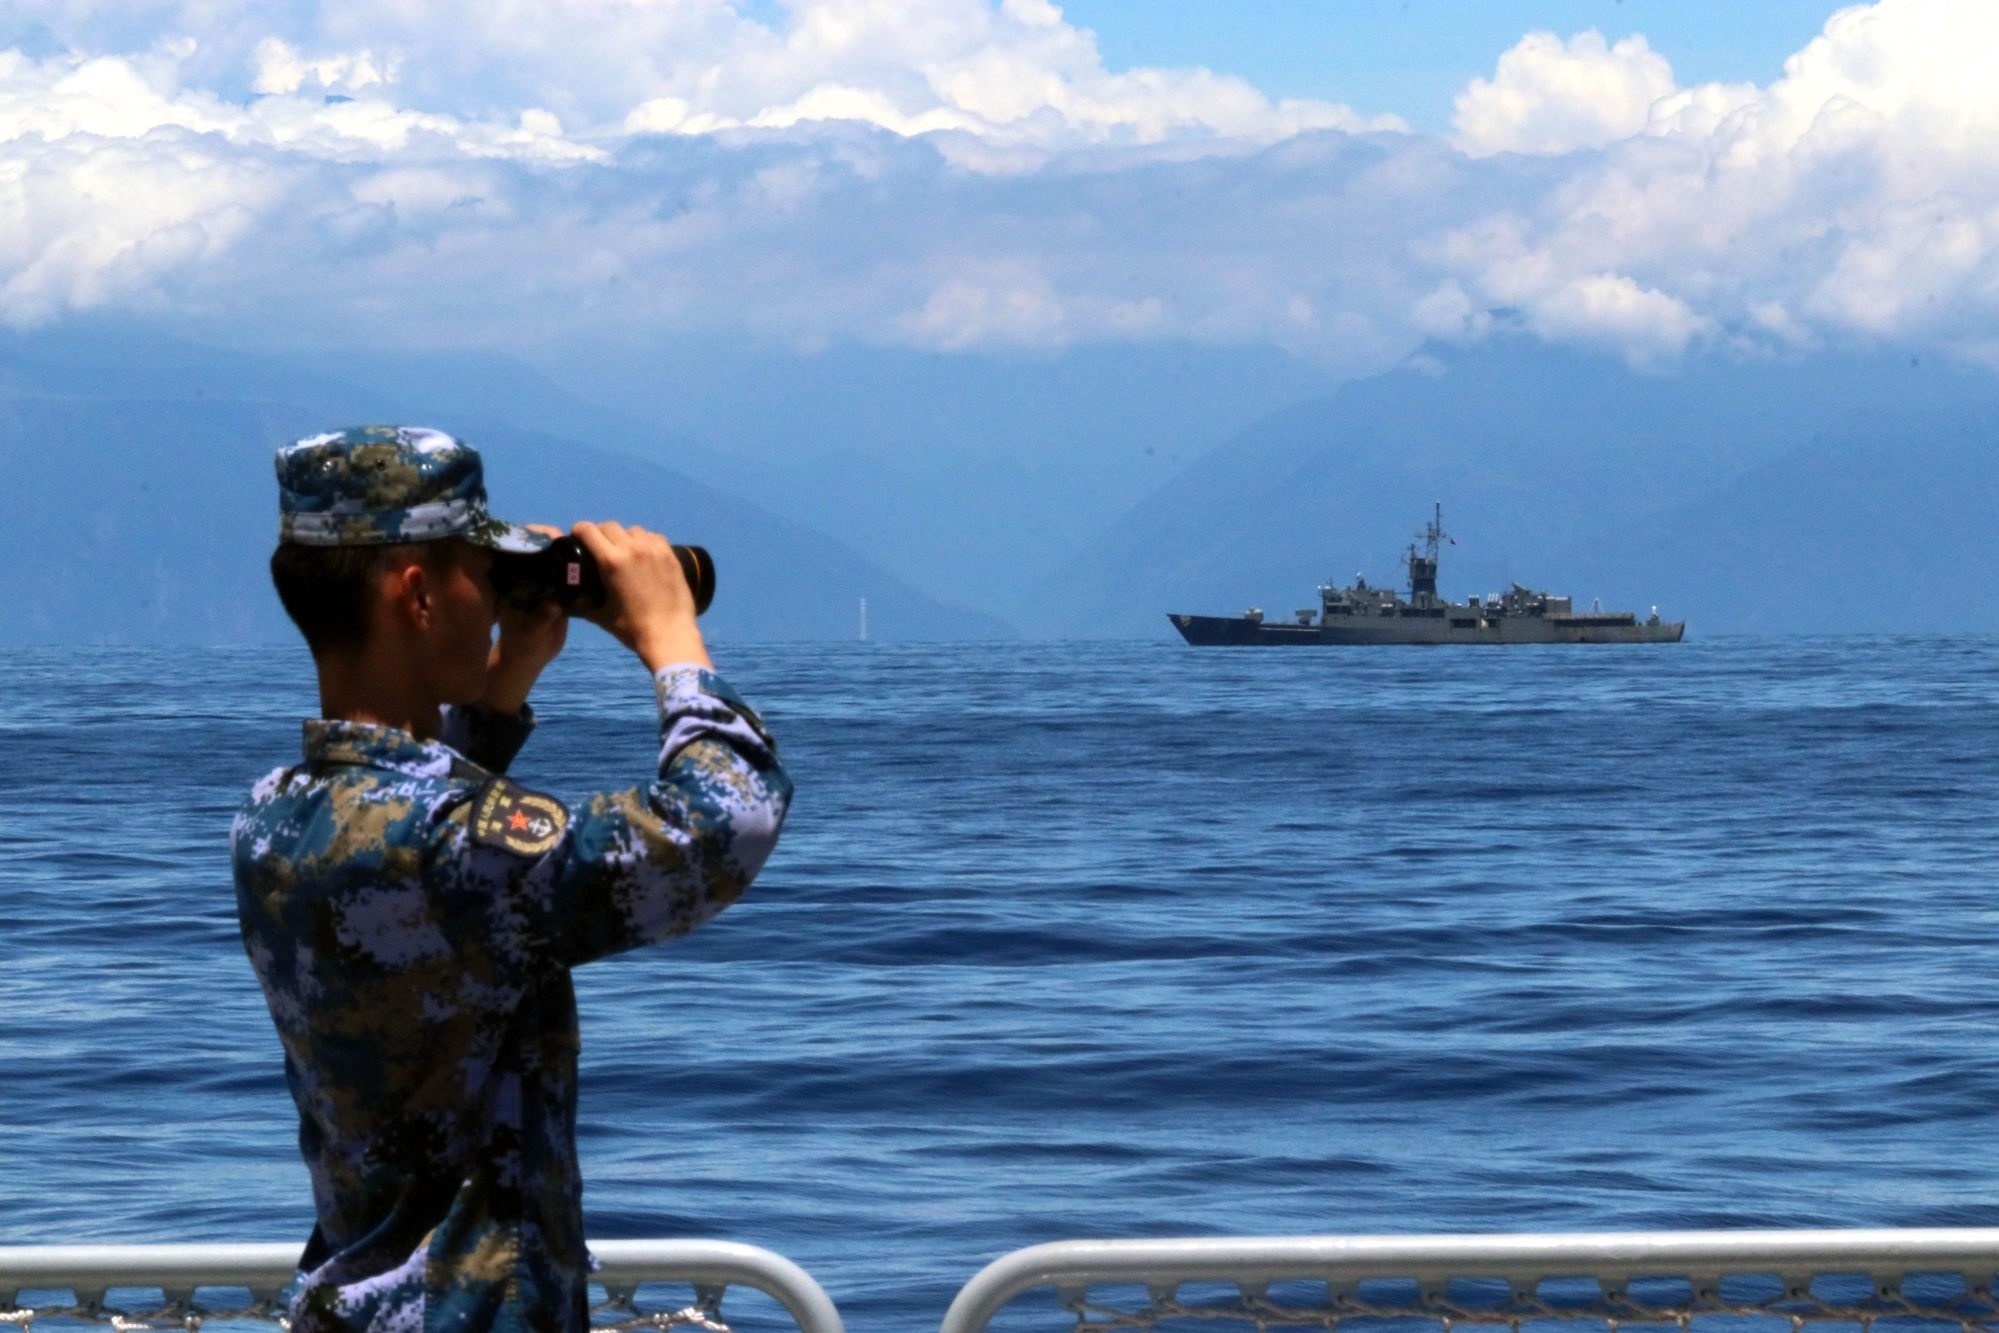 Tàu chiến Trung Quốc - Đài Loan vờn nhau trên biển, Bắc Kinh tập trận thêm 1 tháng - Hình 2